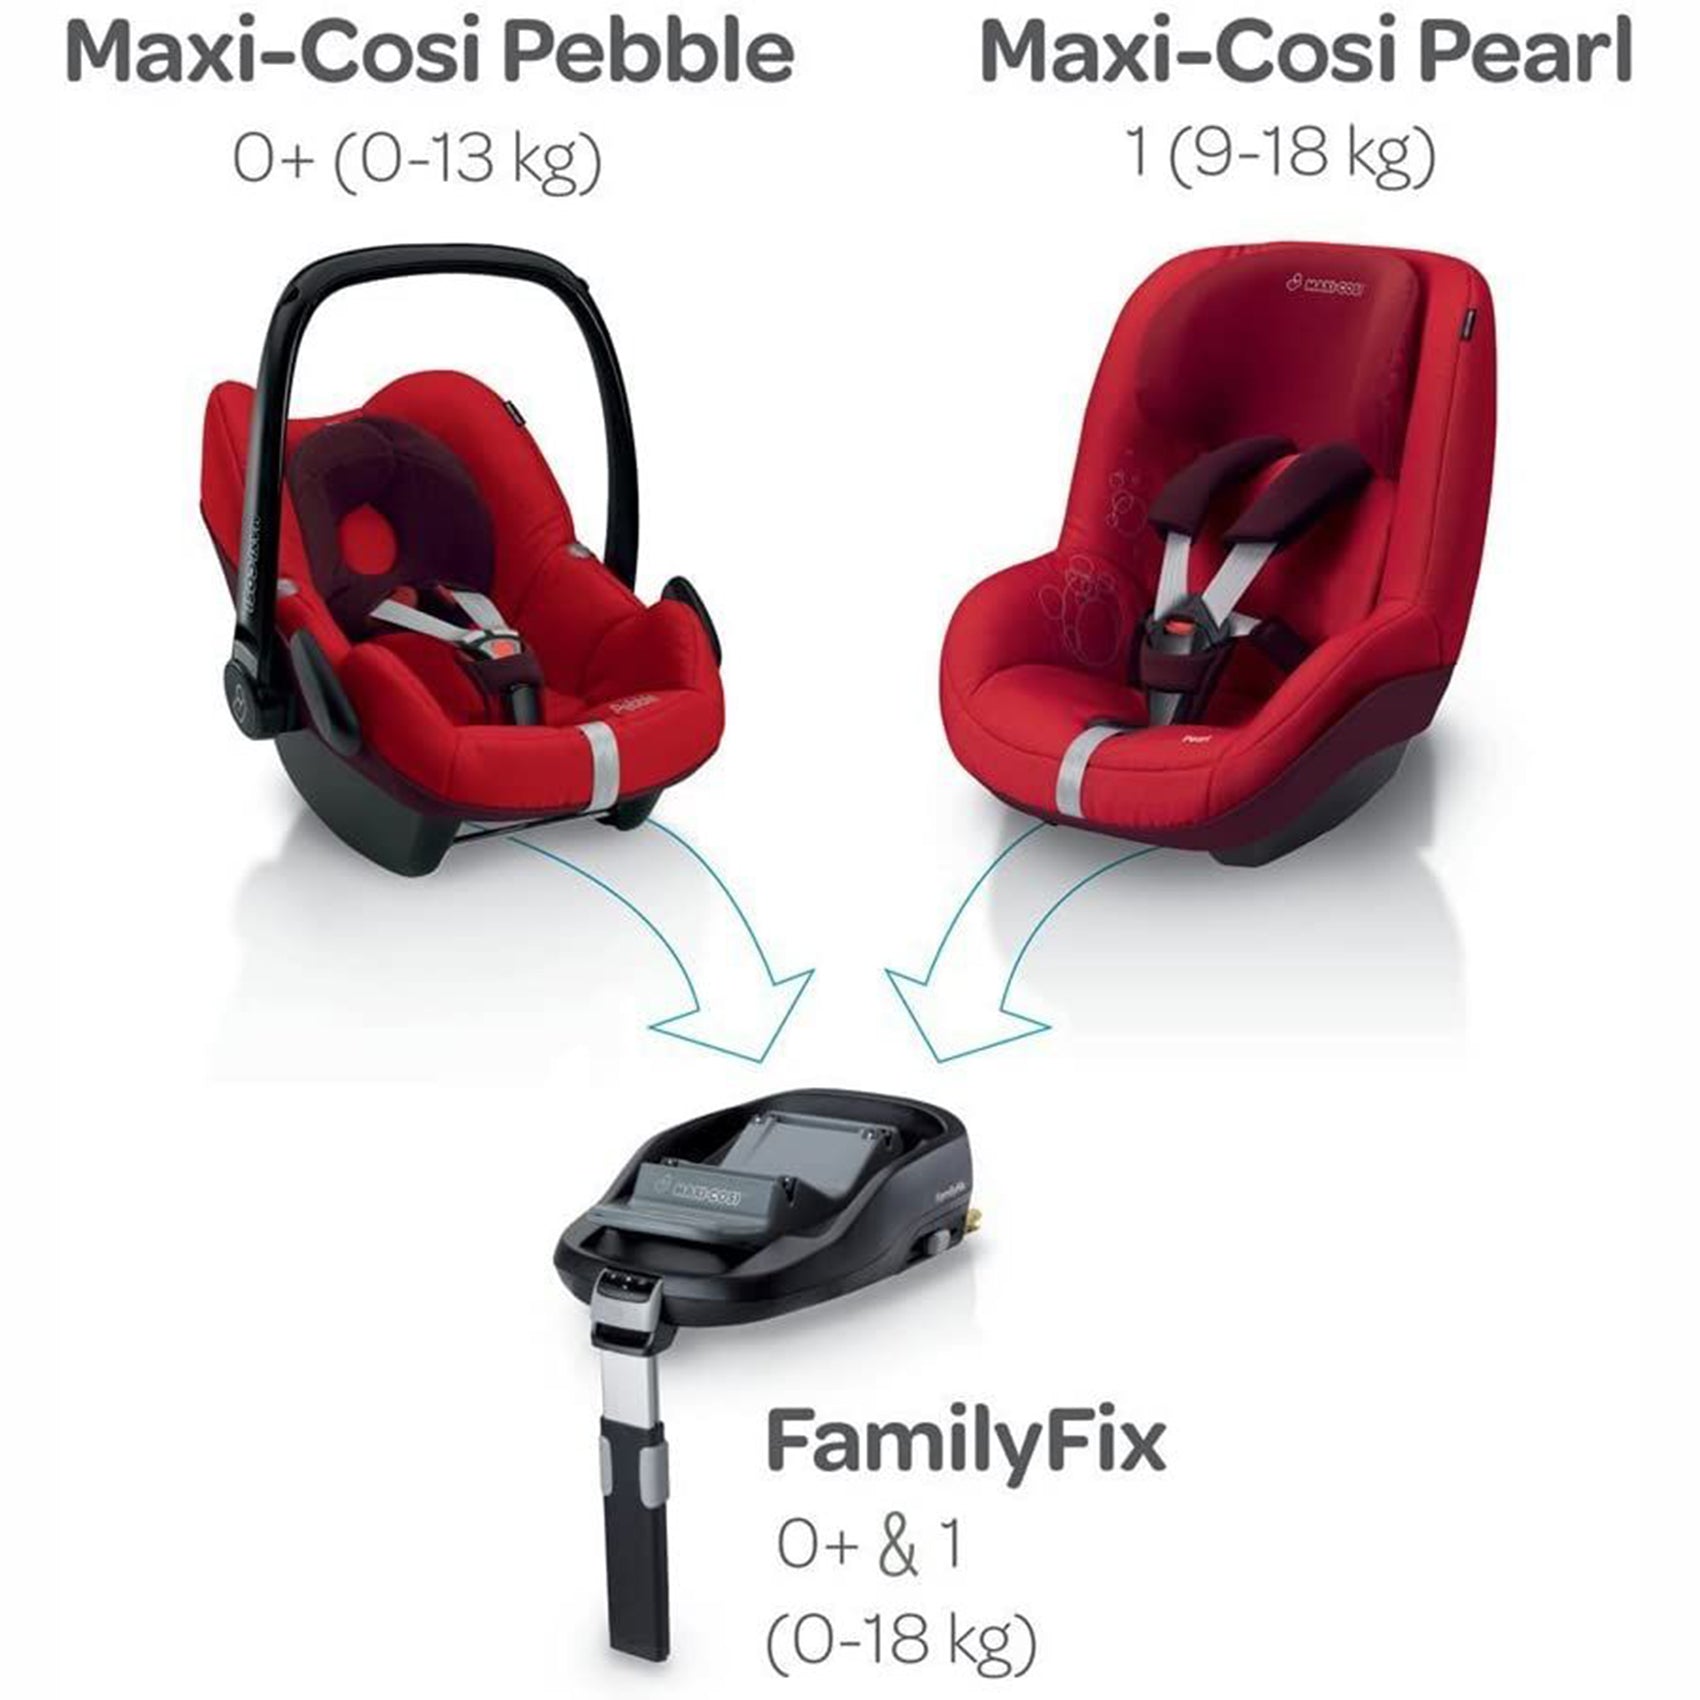 Maxi-Cosi FamilyFix Base - Maxi-Cosi UAE